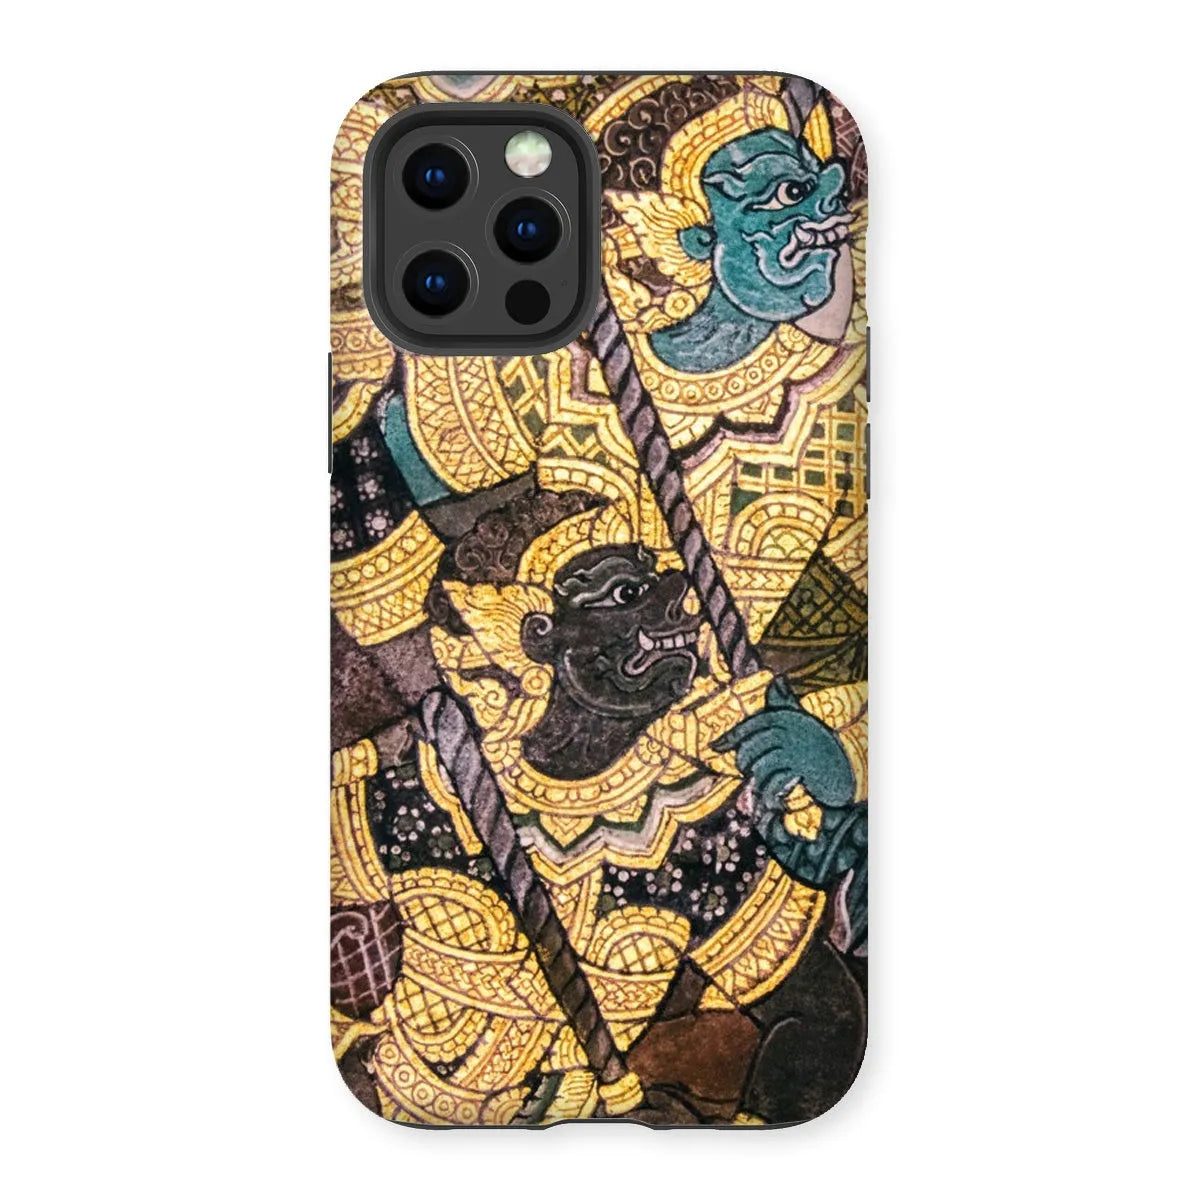 Action Men - Ancient Thai Temple Art Phone Case - Iphone 12 Pro / Matte - Mobile Phone Cases - Aesthetic Art